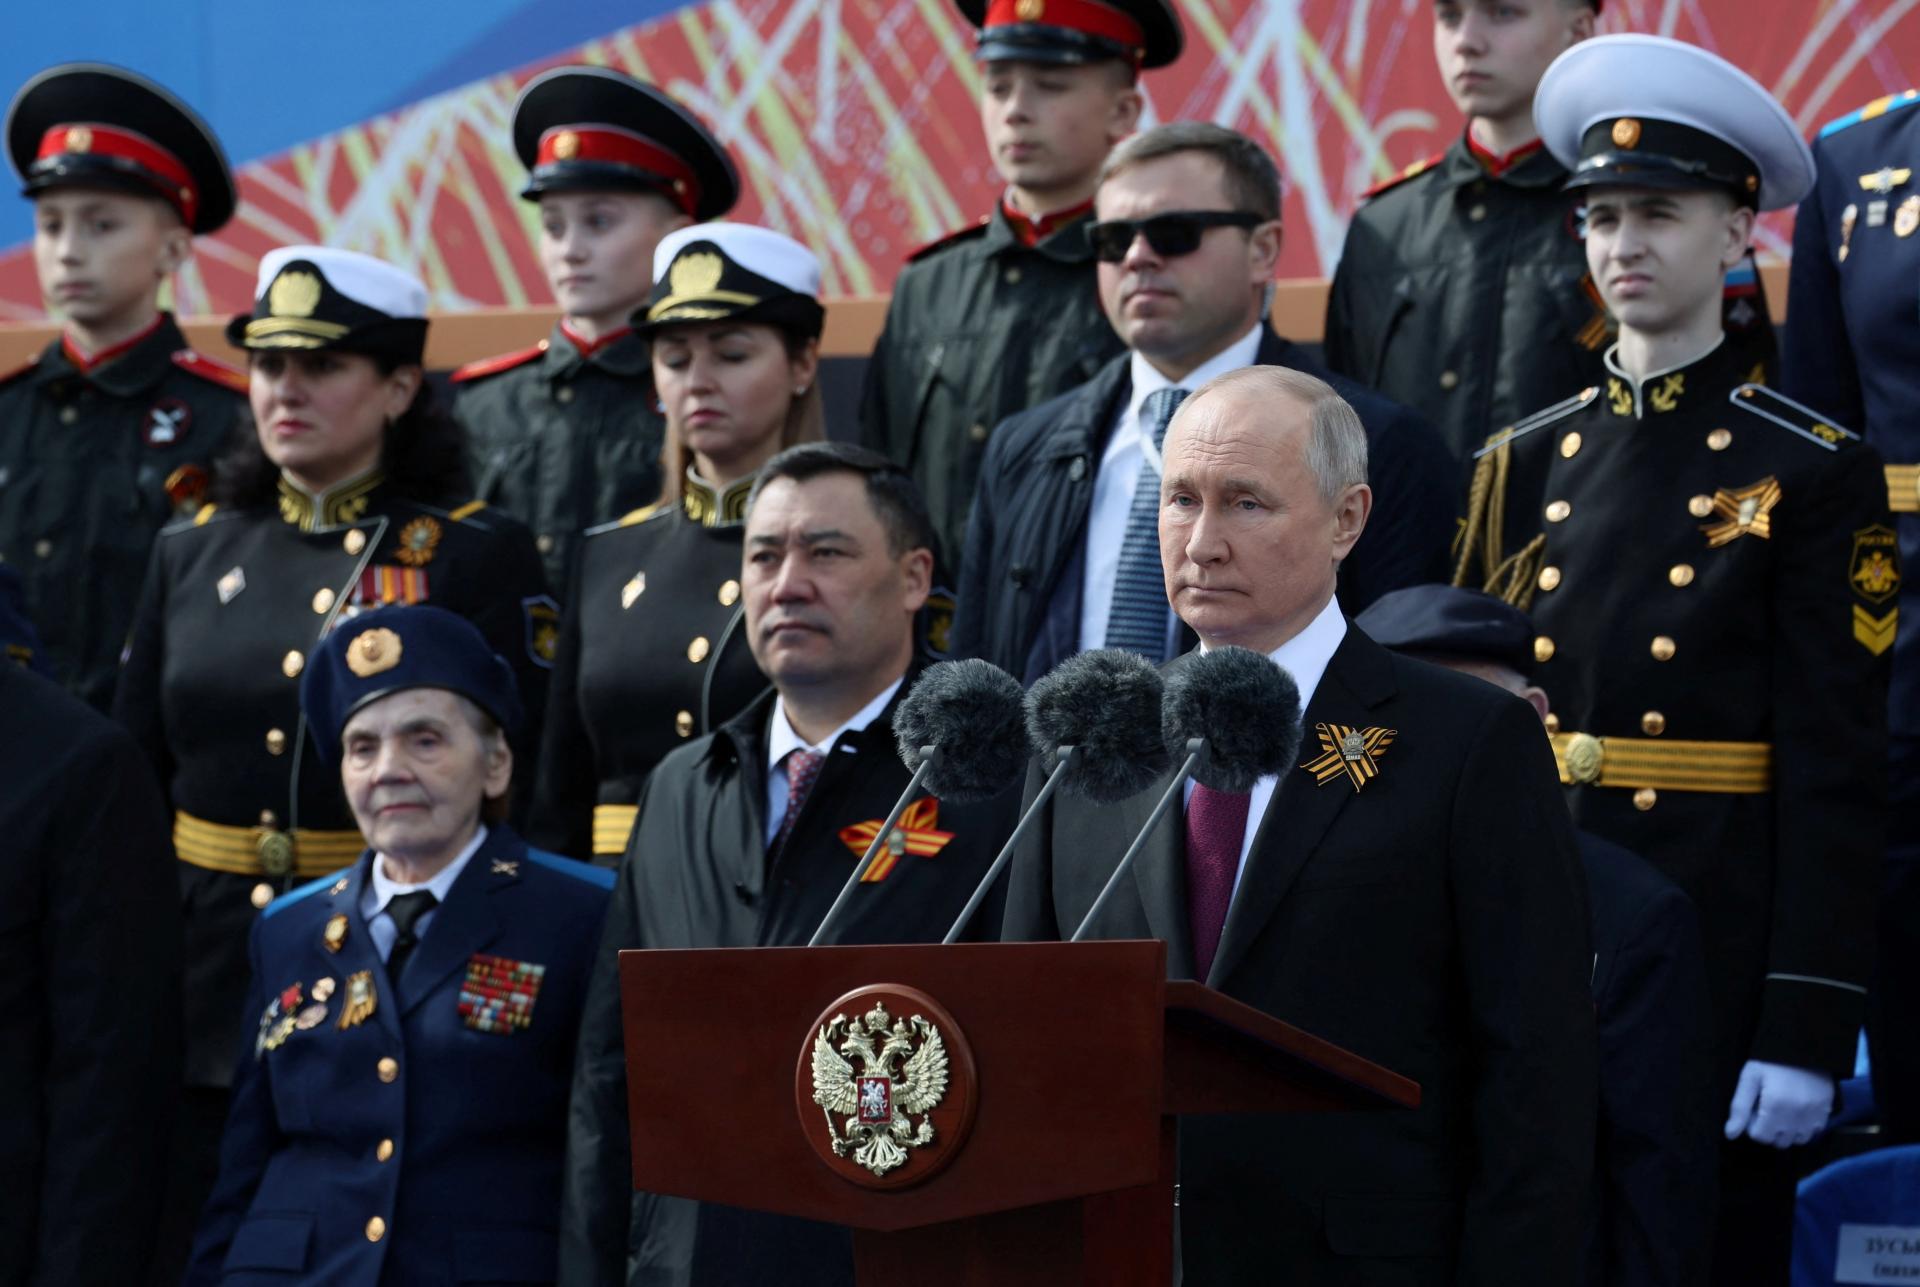 Putin na prehliadke: Proti Rusku opäť rozpútali vojnu. Príčinou katastrofy ukrajinského ľudu sú kroky Západu